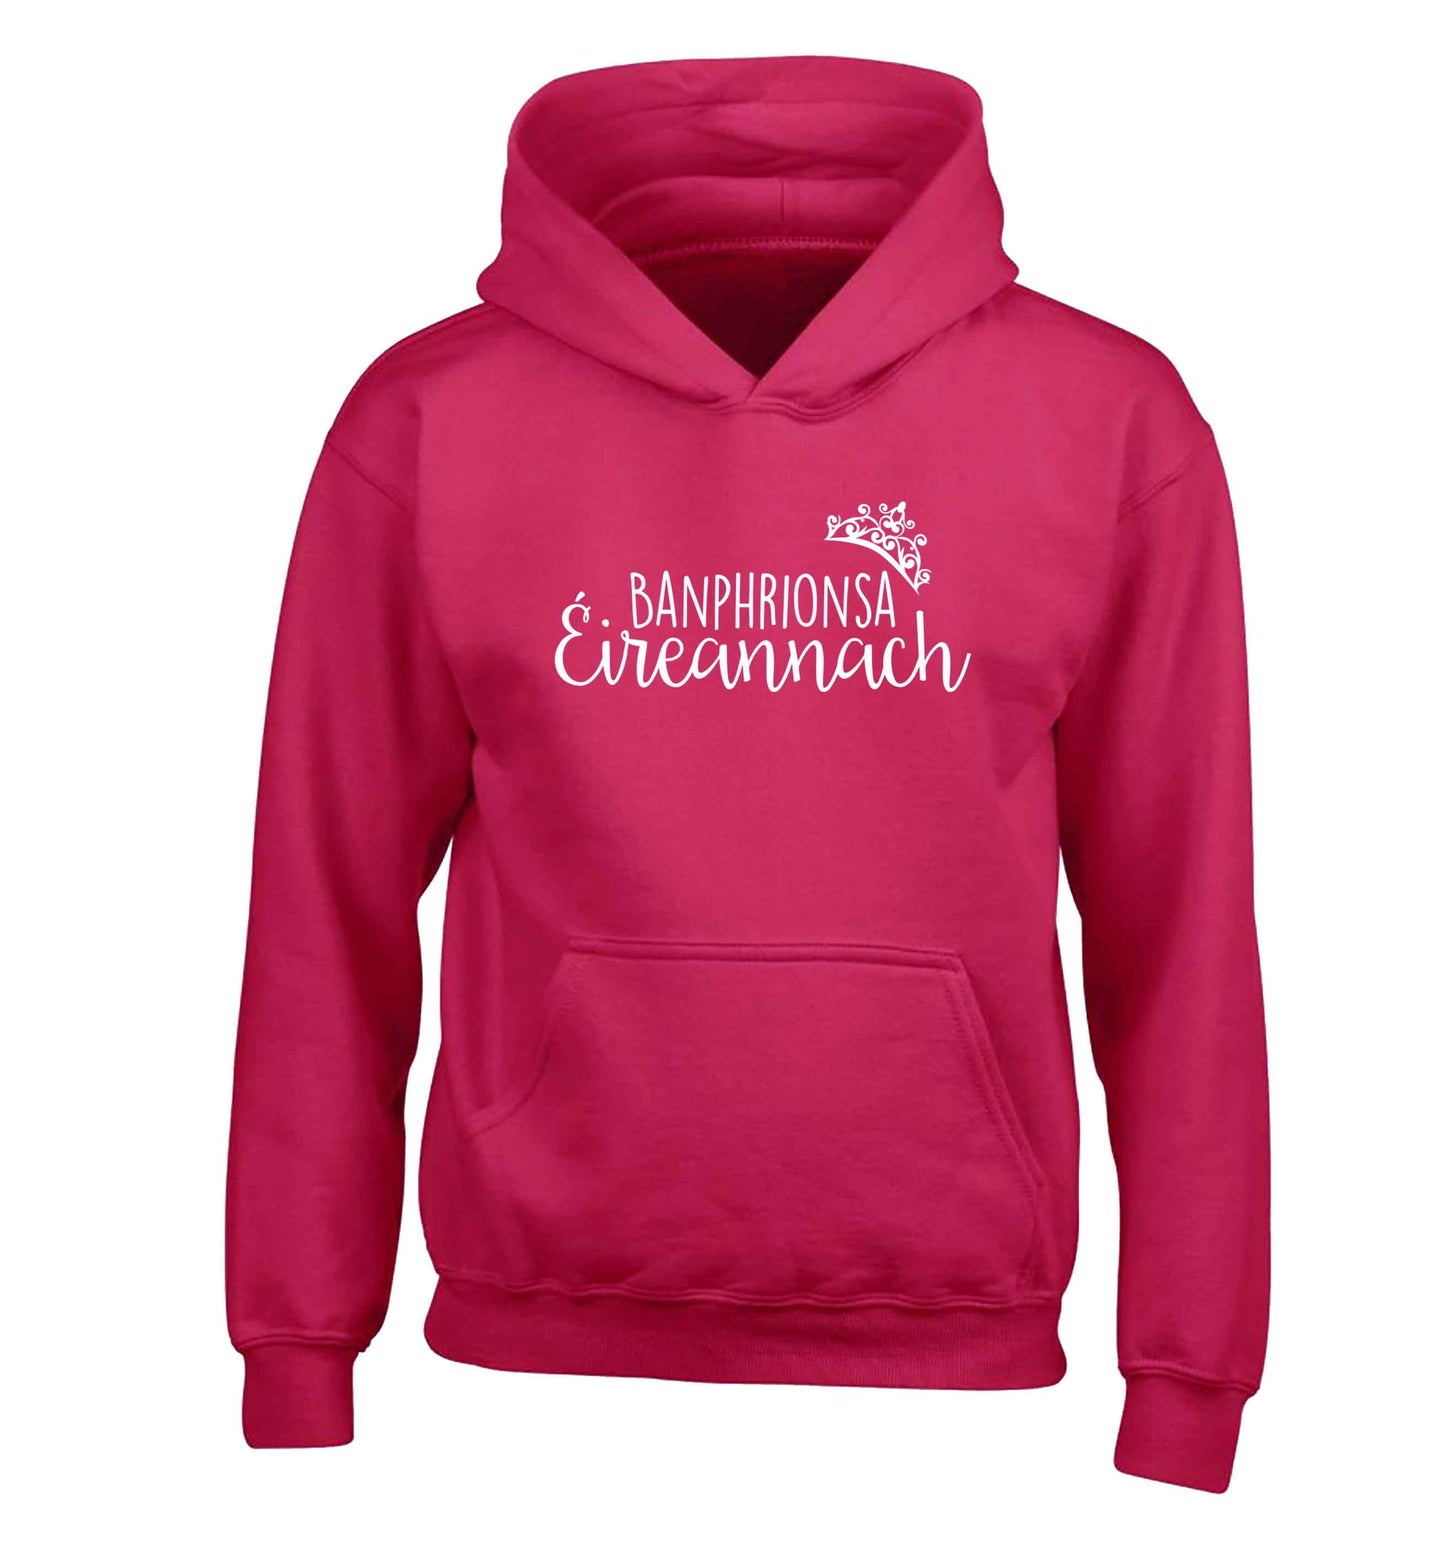 Banphrionsa eireannach children's pink hoodie 12-13 Years